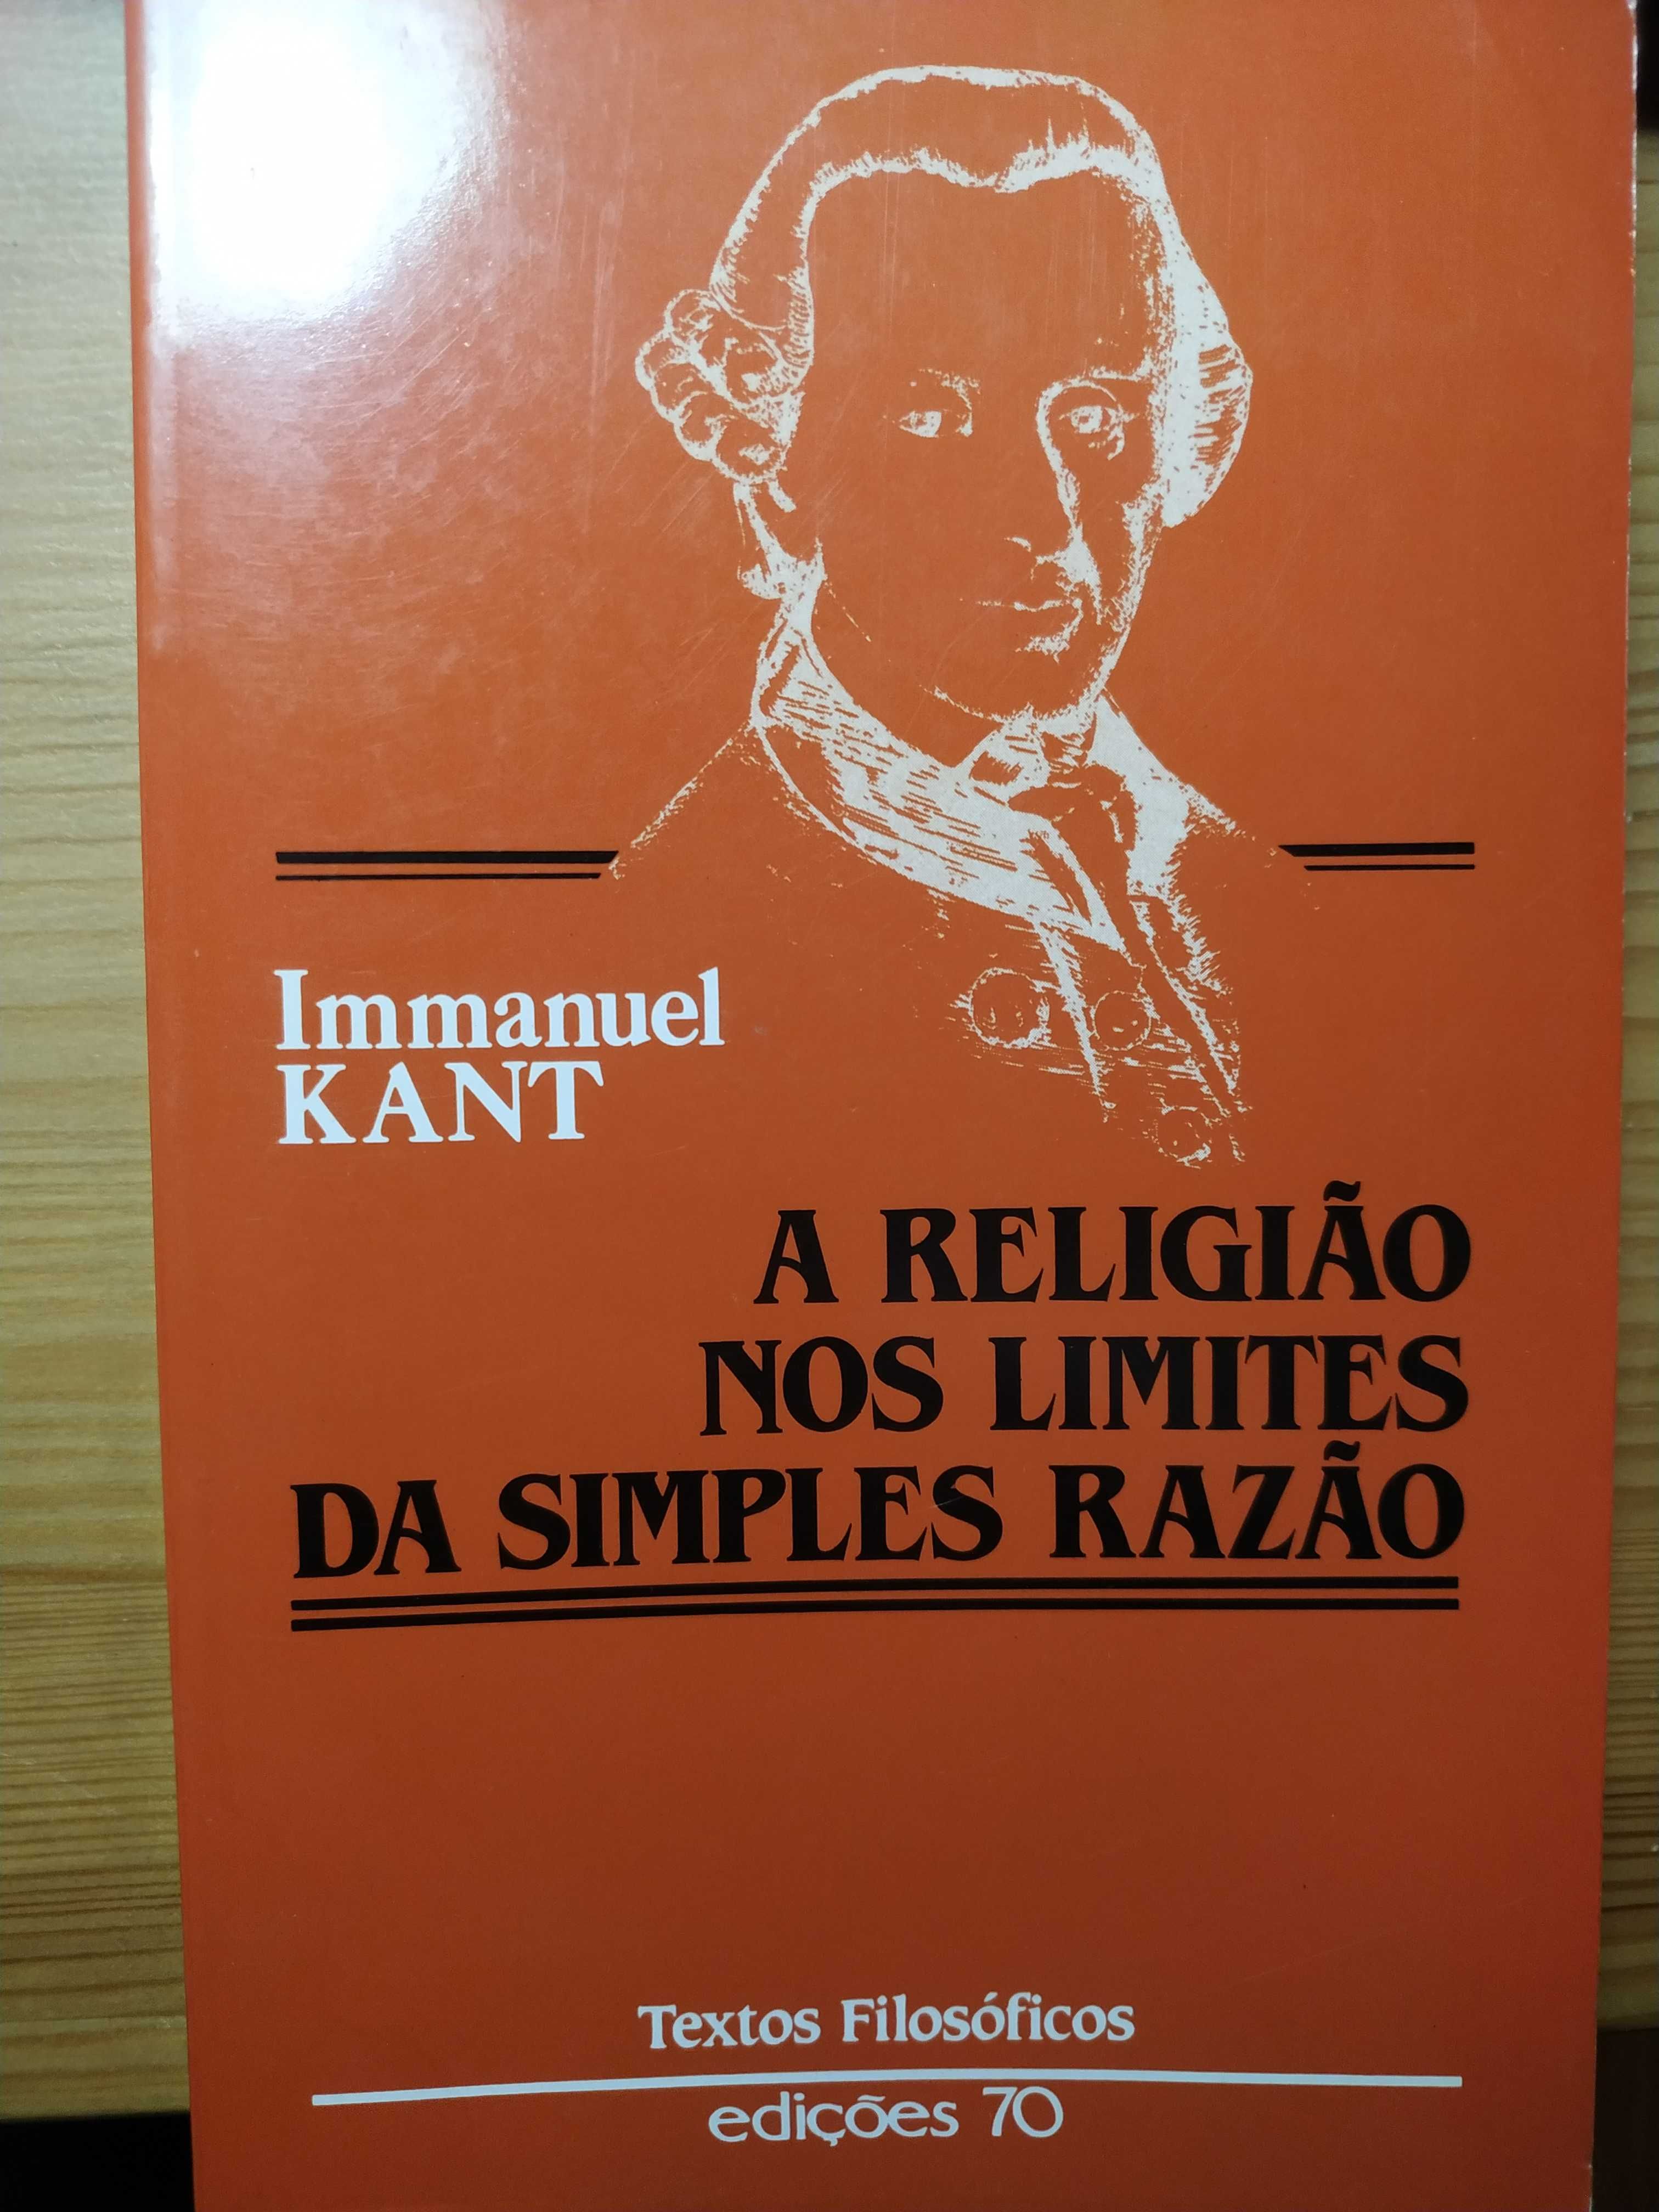 Immanuel Kant - A religião nos limites da simples razão